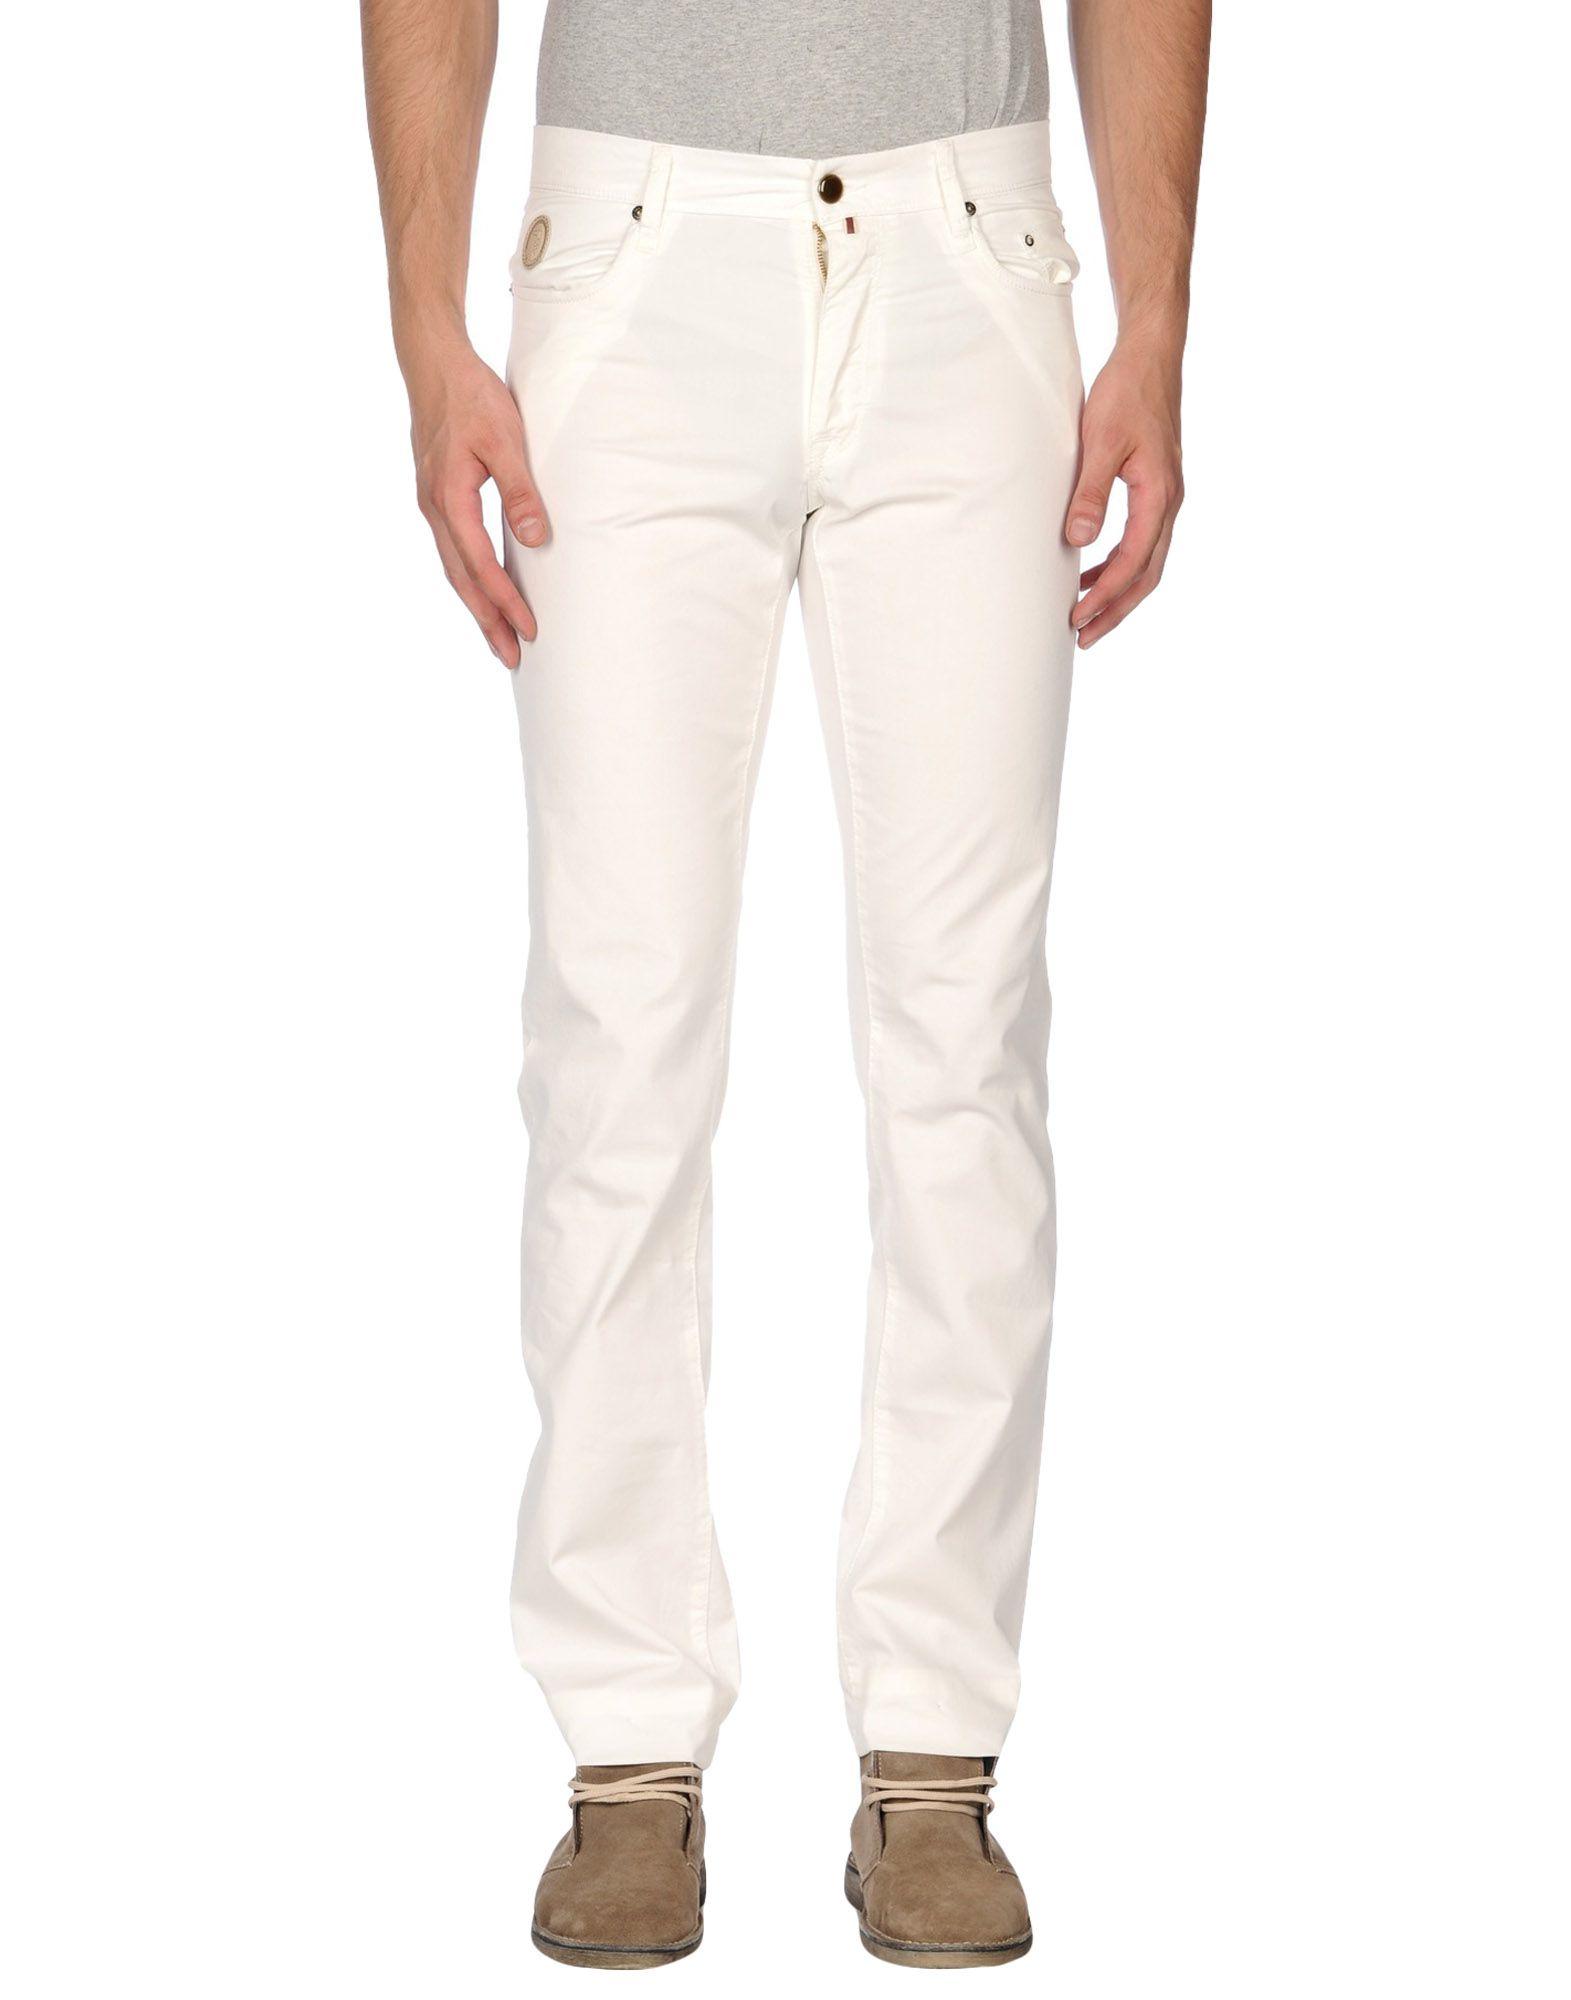 Pantalone modello jeans bianco